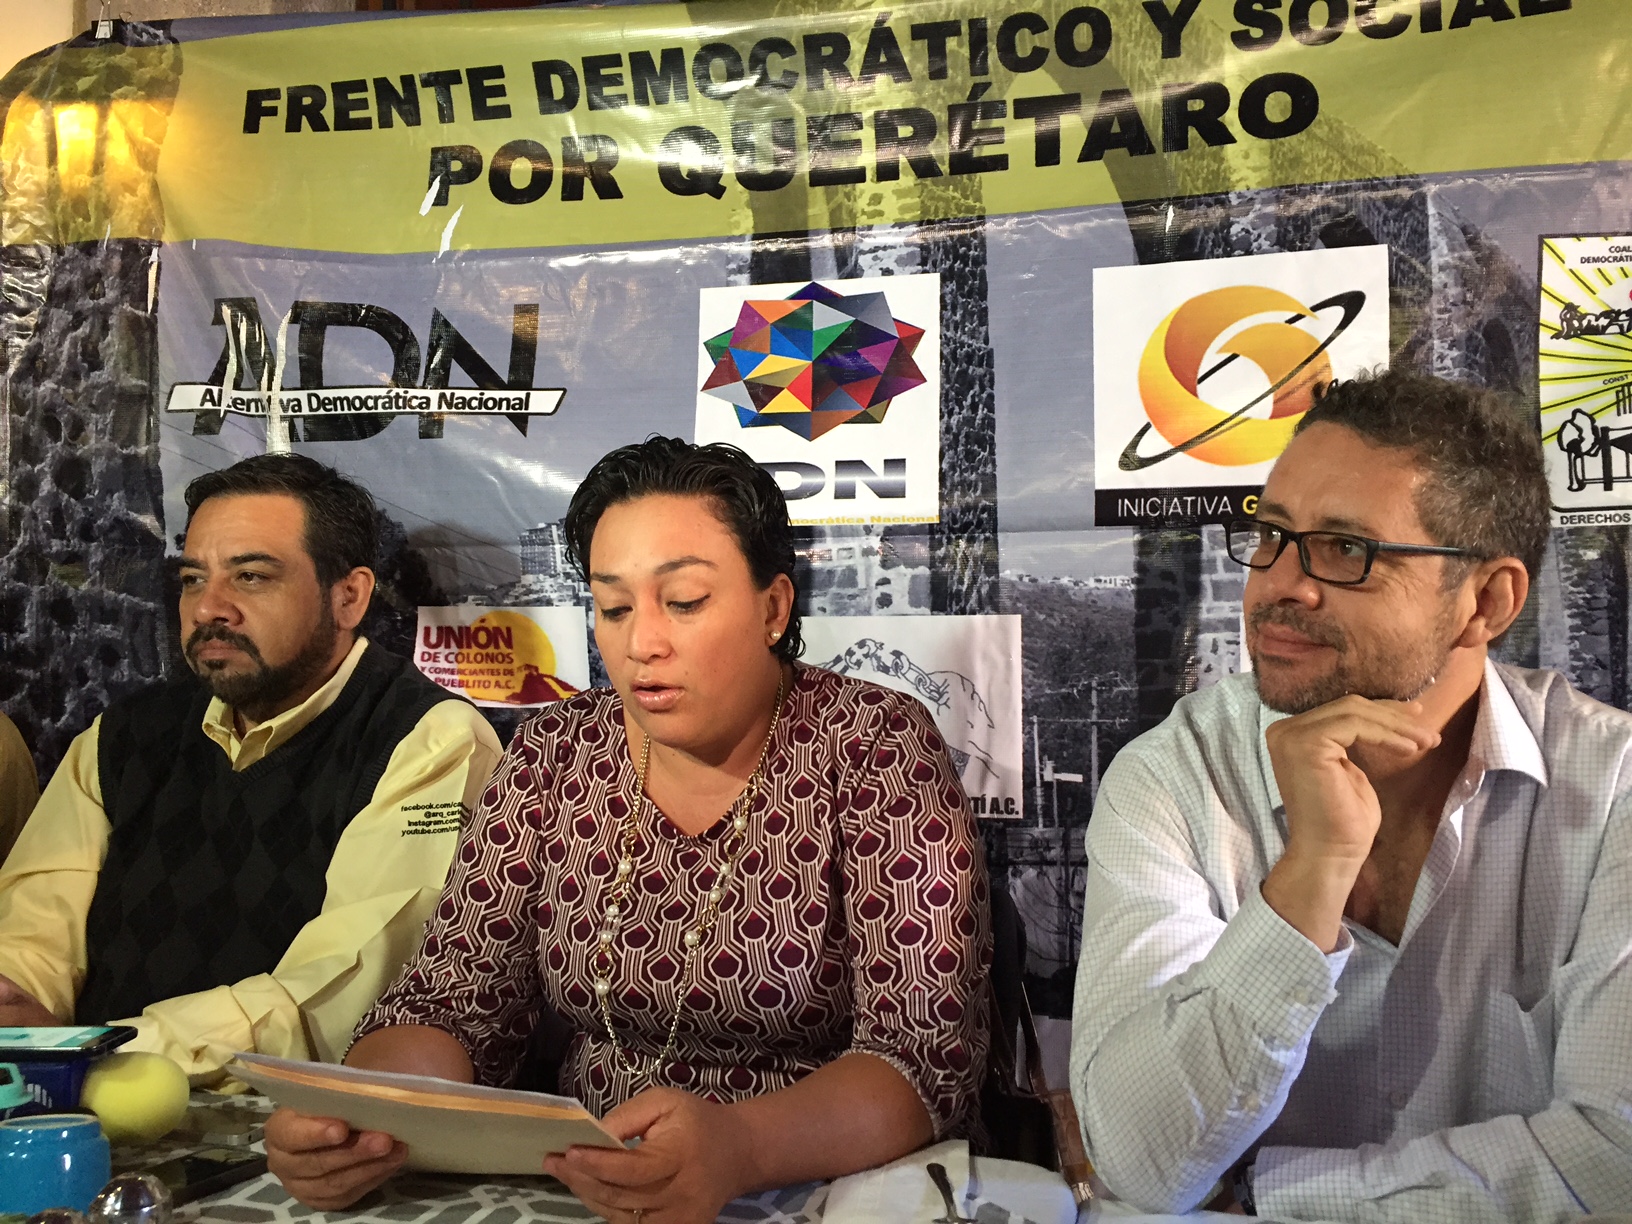  Reuniones de dirigente del PRD con actores políticos son una “irresponsabilidad”: militantes